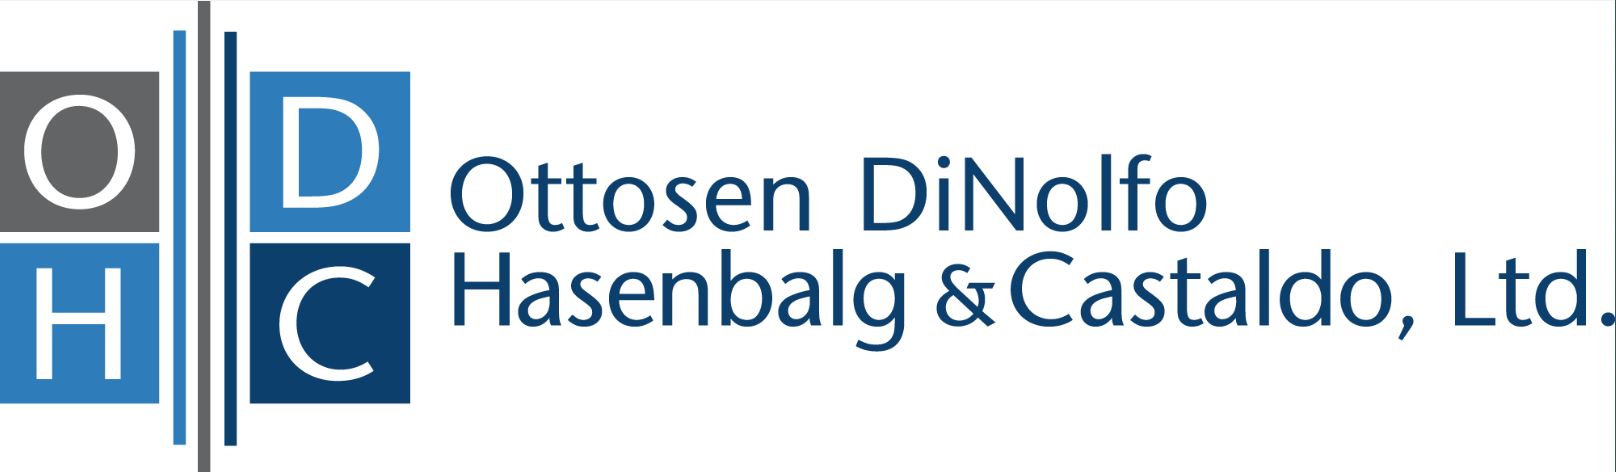 Ottosen DiNolfo Hasenbalg & Castaldo, Ltd.